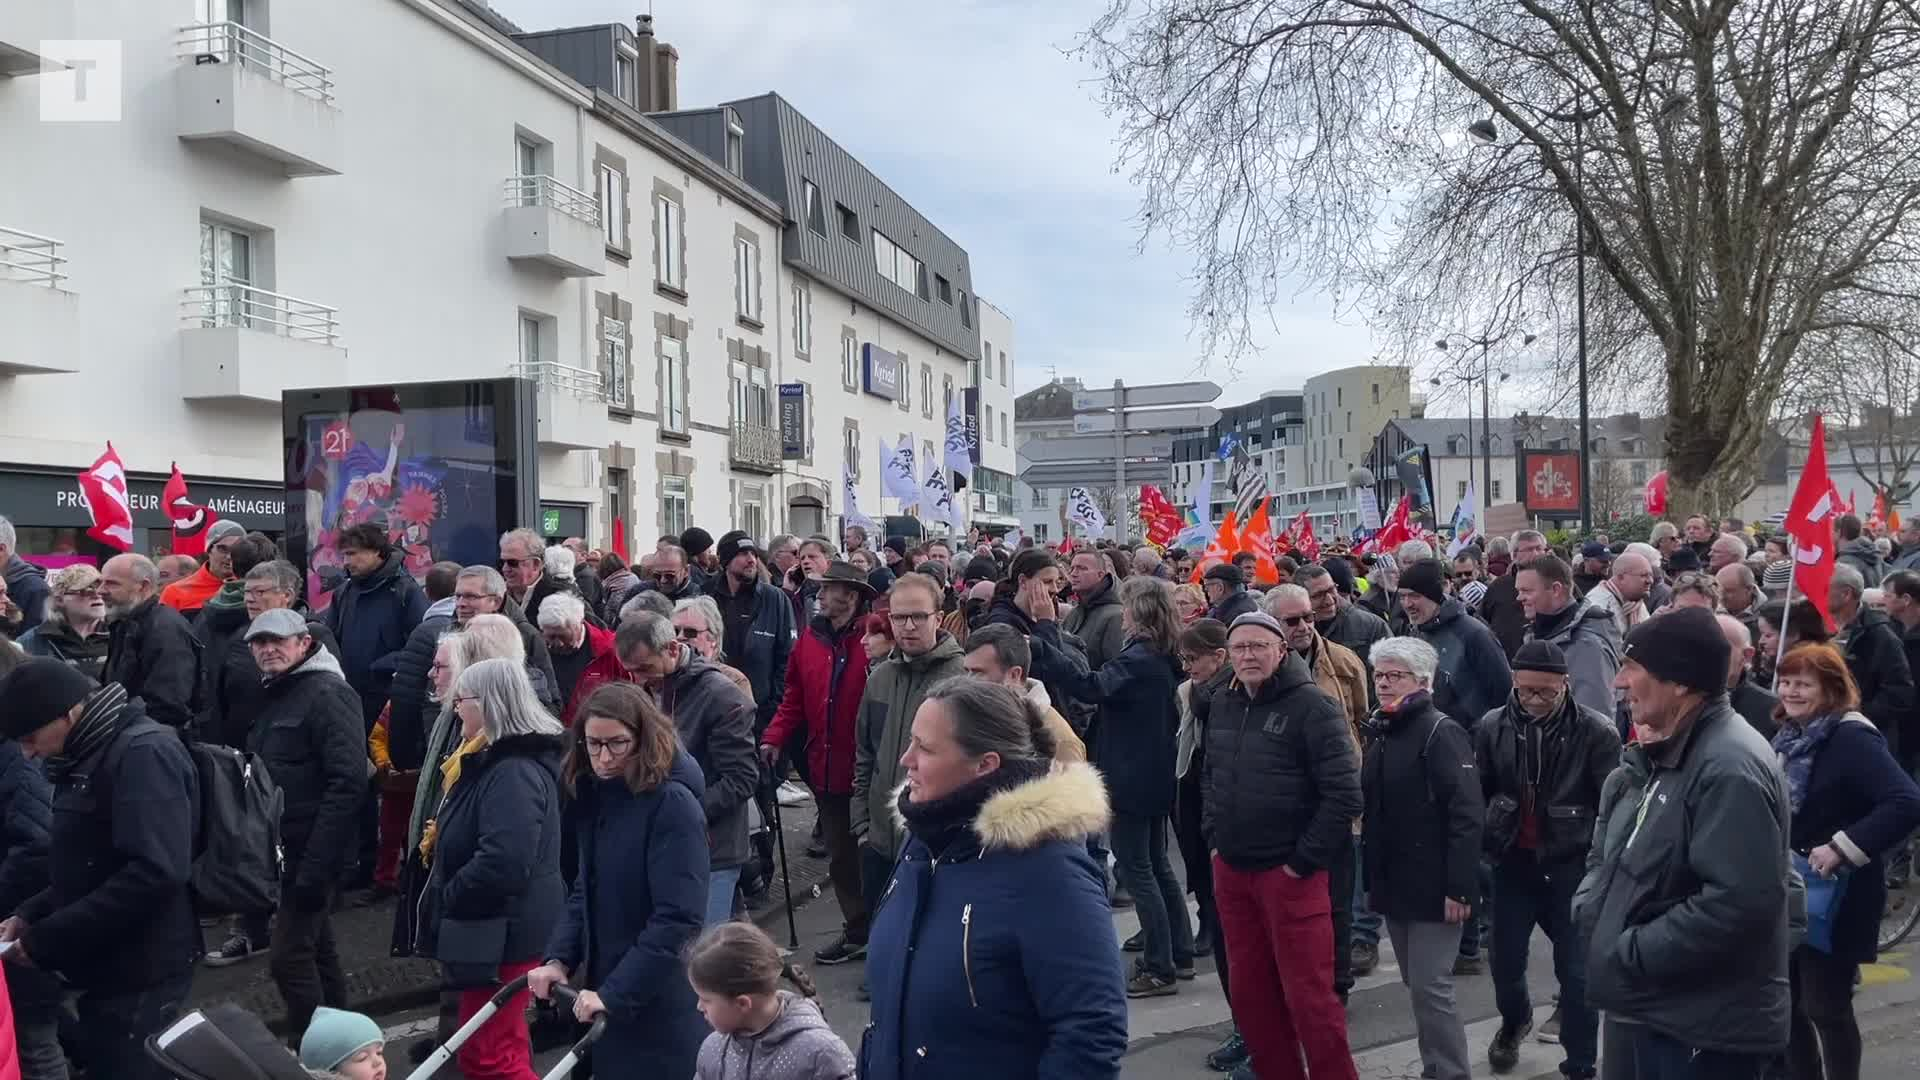 "Ça nous détruit encore plus" : sixième journée de mobilisation contre la réforme des retraites à Vannes (Le Télégramme)